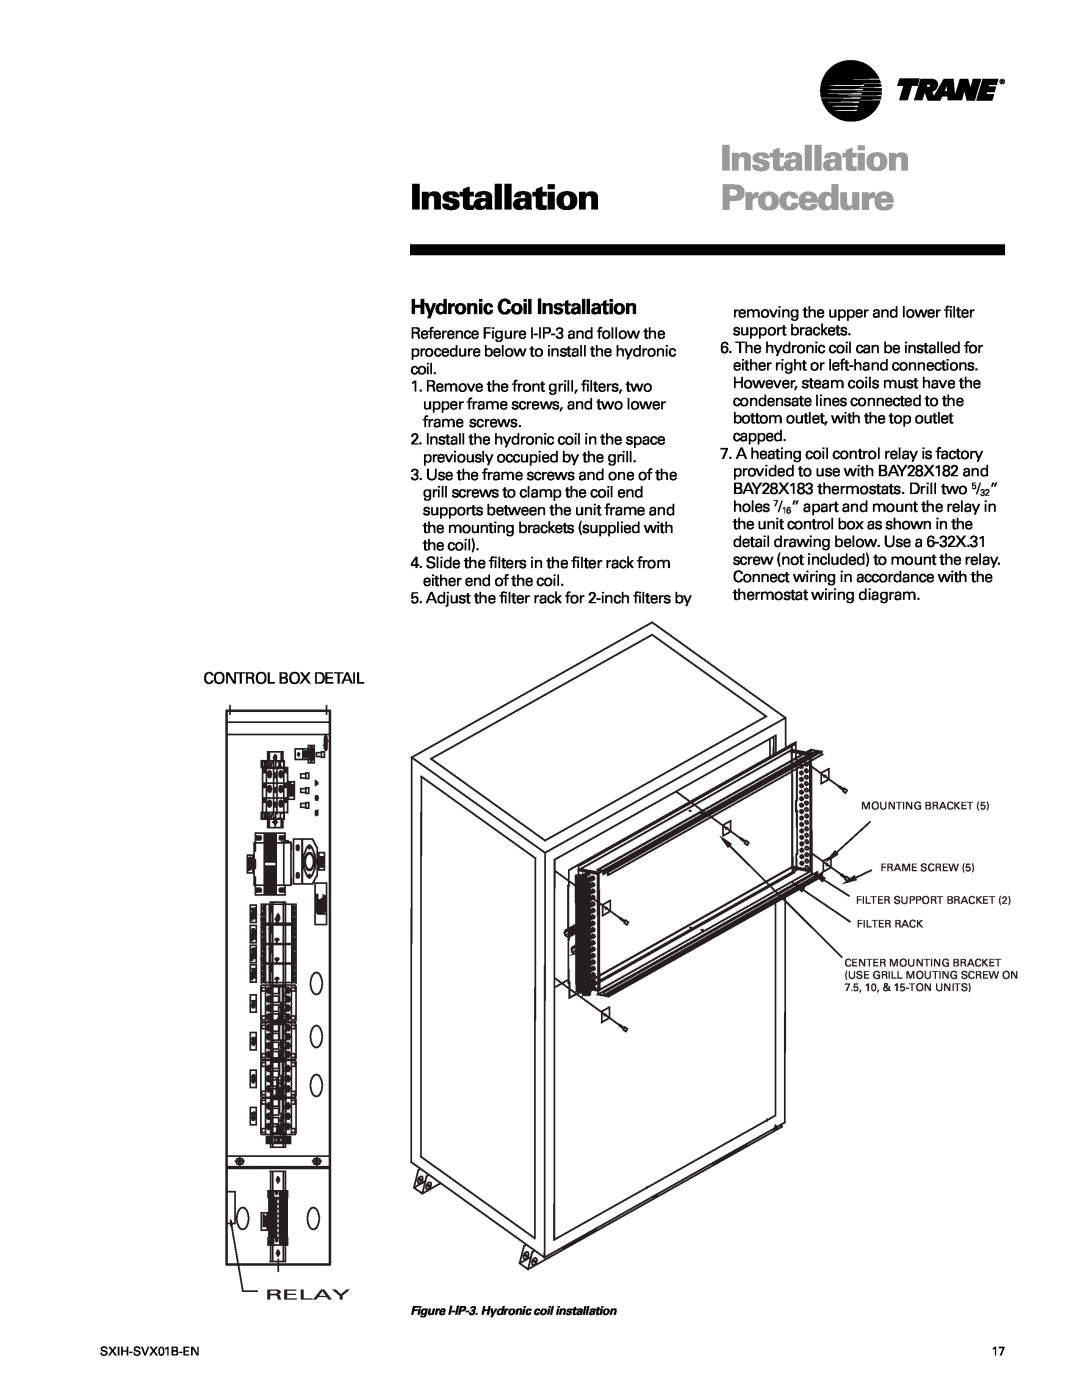 Trane SCIH manual Hydronic Coil Installation, Installation Procedure 